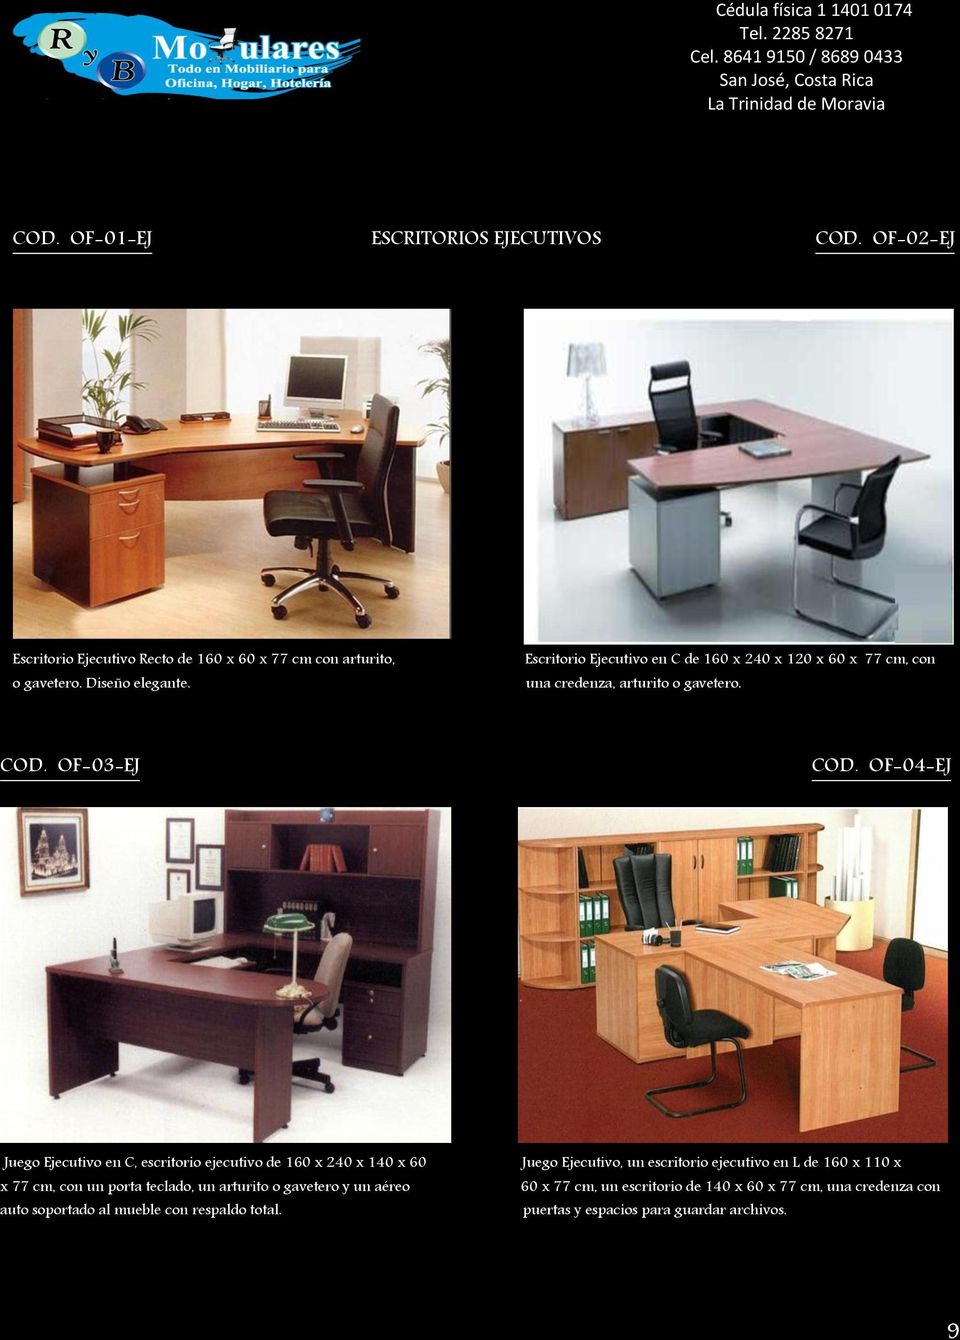 OF-04-EJ Juego Ejecutivo en C, escritorio ejecutivo de 160 x 240 x 140 x 60 x 77 cm, con un porta teclado, un arturito o gavetero y un aéreo auto